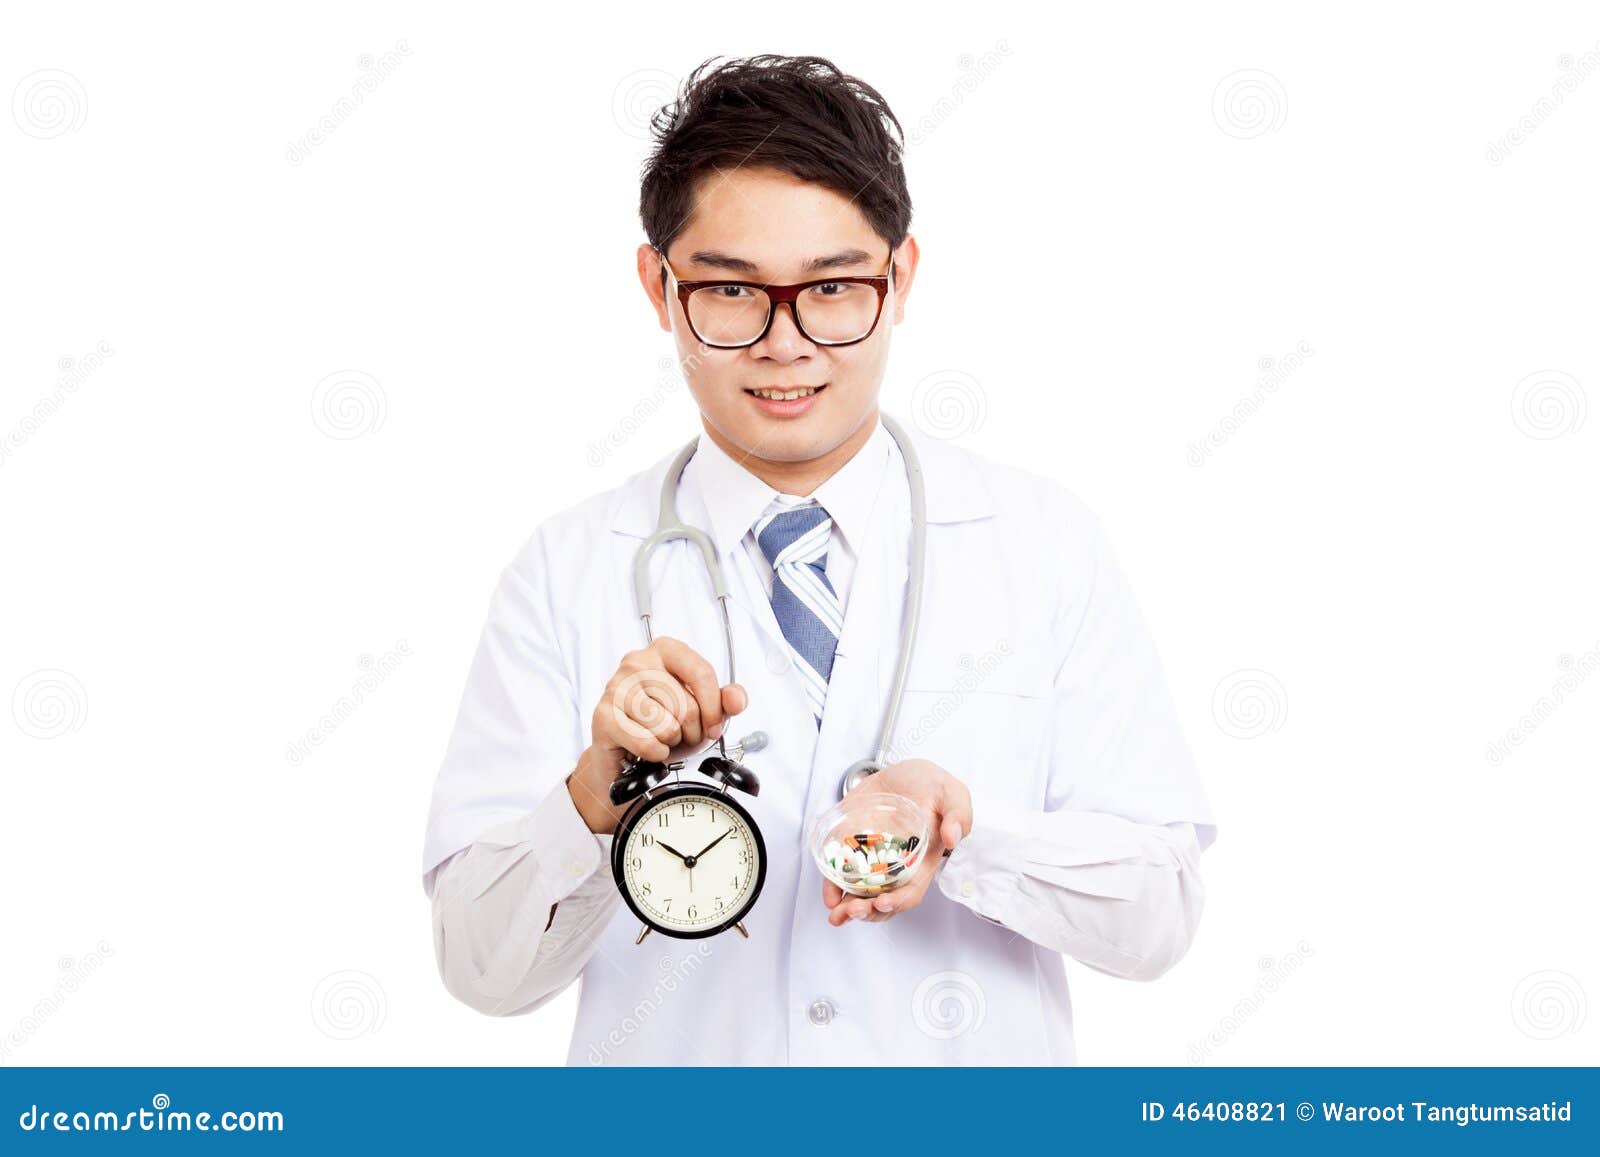 Доктор час doctor clock. Доктор с часами рисунок. Доктор держит часы. Часы для врача. Врач с часами без фона.